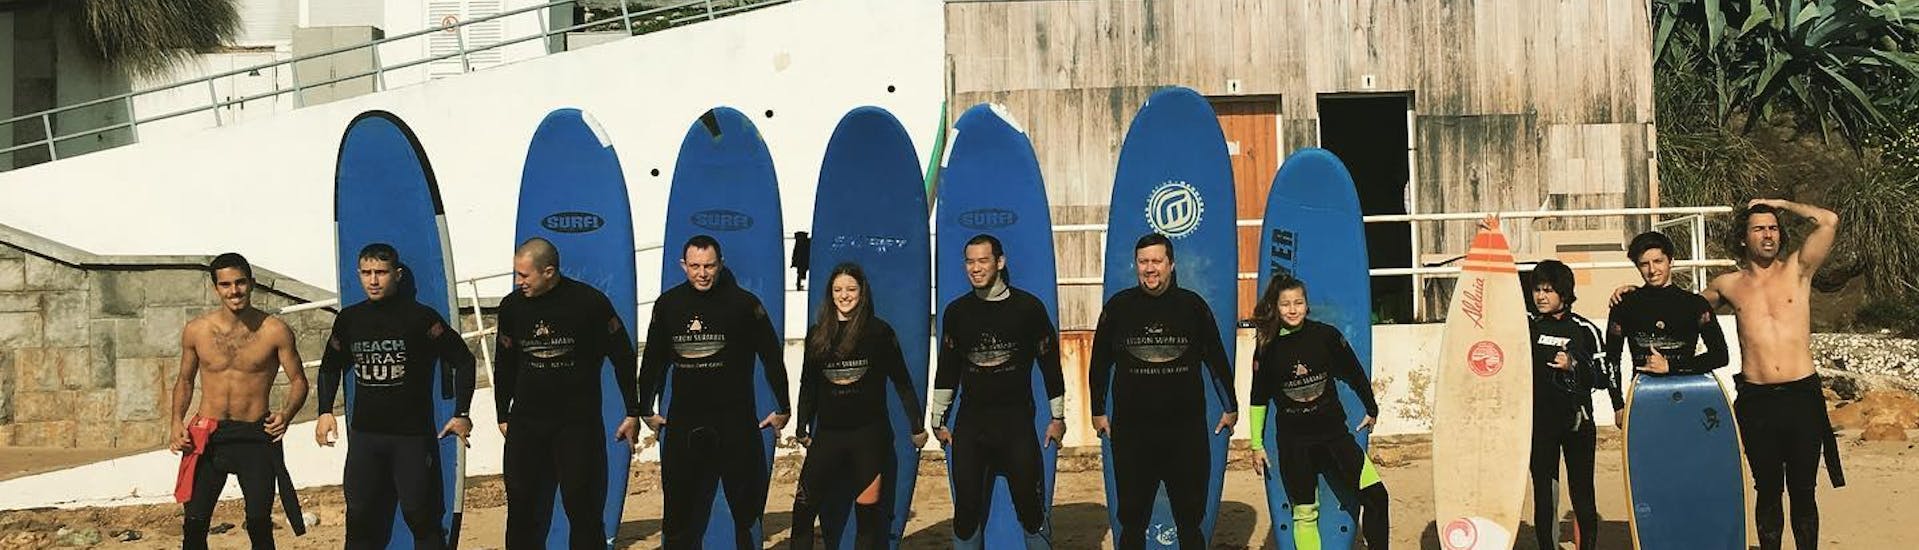 Un groupe de surfeurs en herbe posant pour une photo aux côtés de leurs moniteurs de surf de Lisbonne Surfaris avant de commencer leurs cours de surf sur la plage de Carcavelos près de Lisbonne.